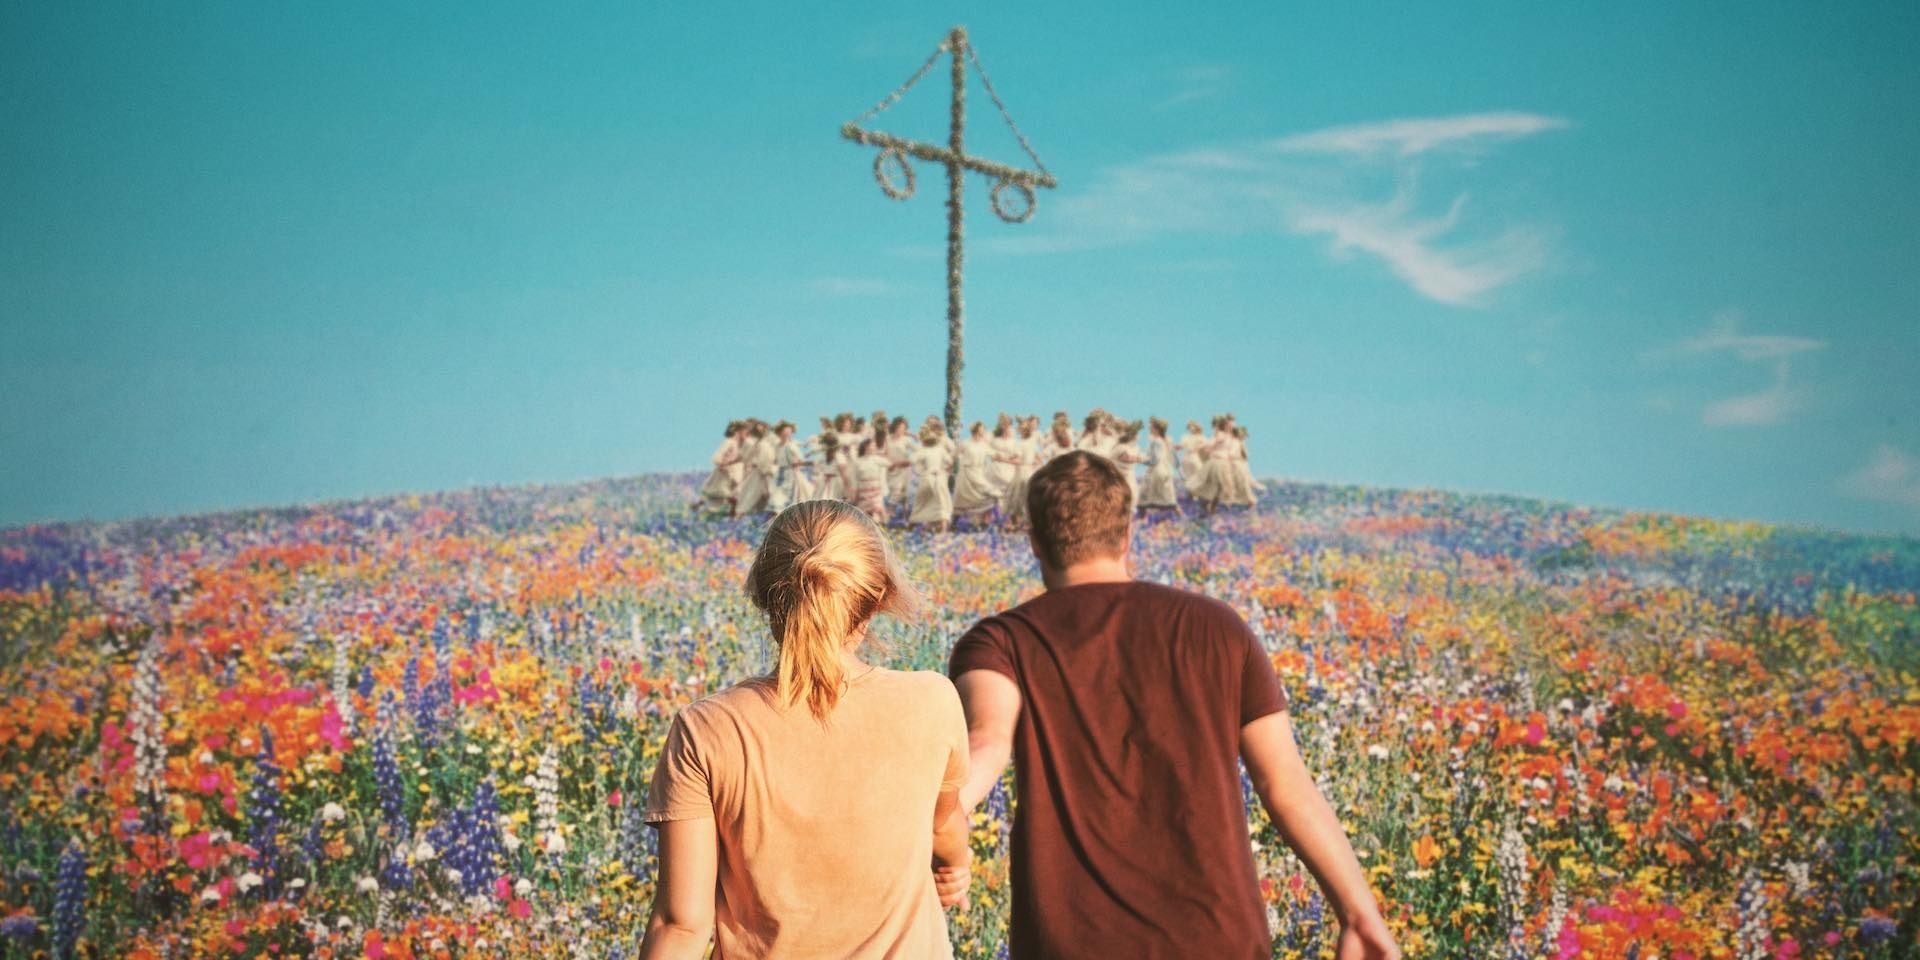 Two people walking to a maypole across a field of flowers.